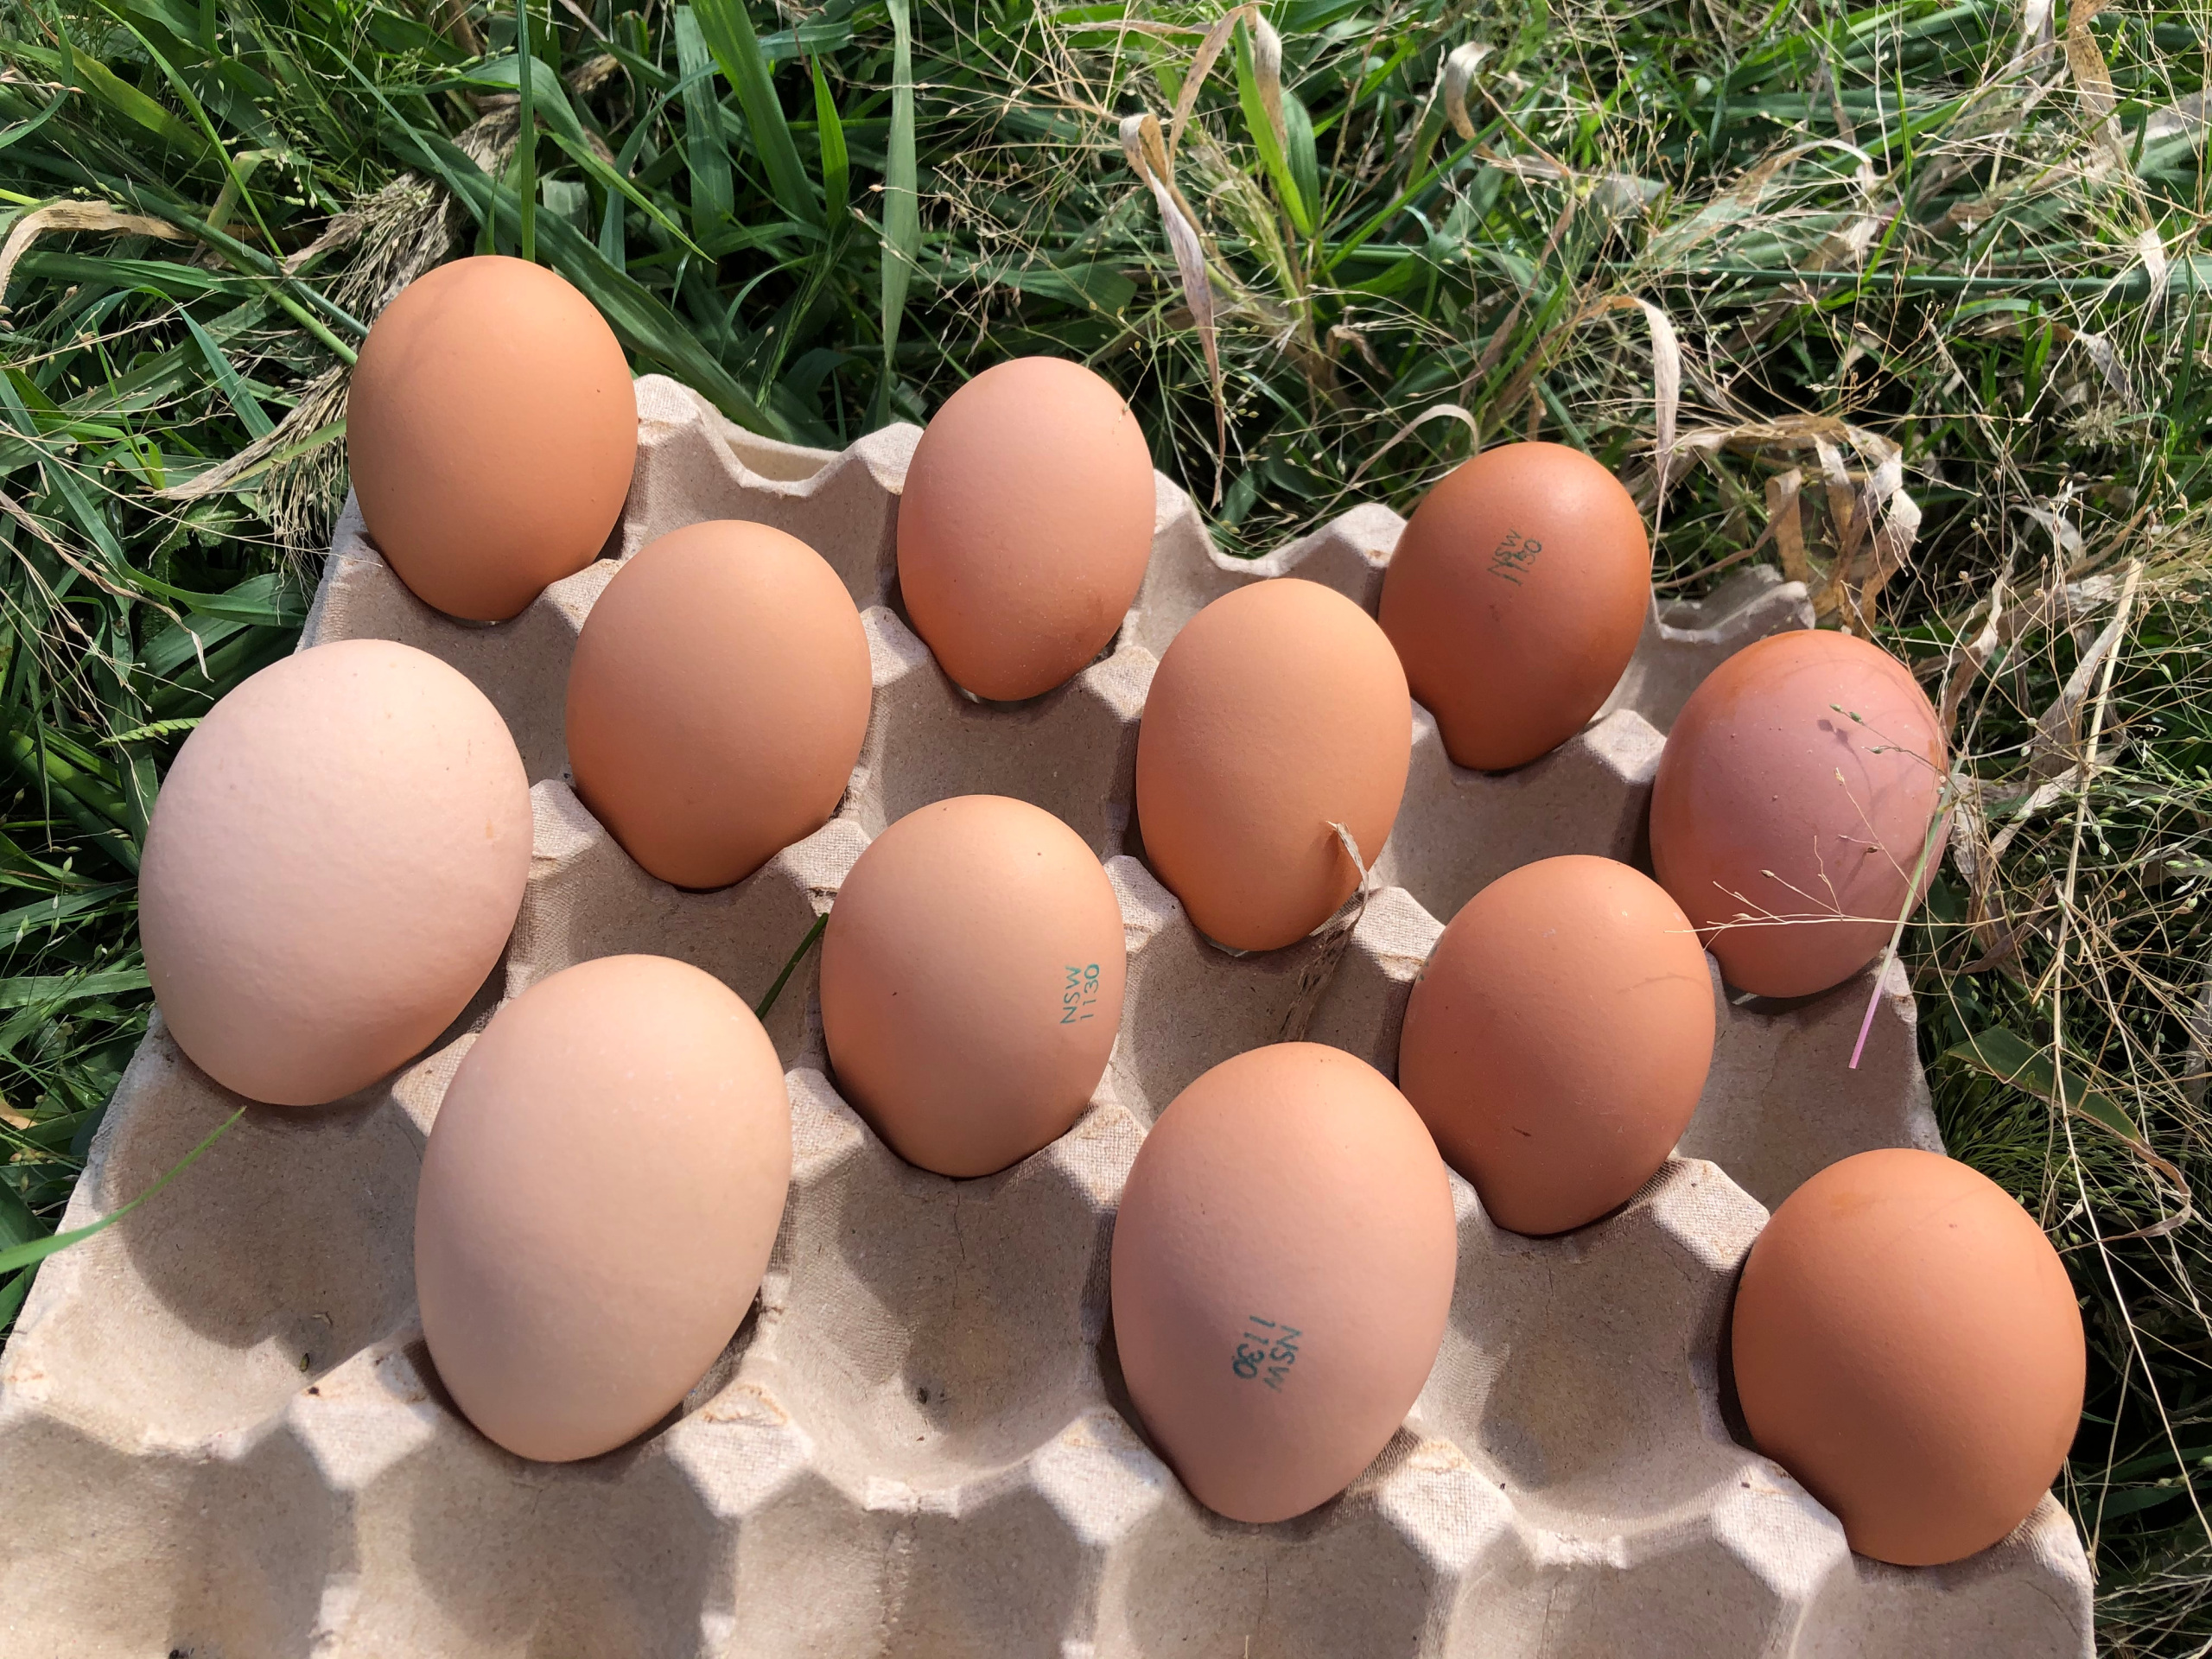 12 GIANT eggs